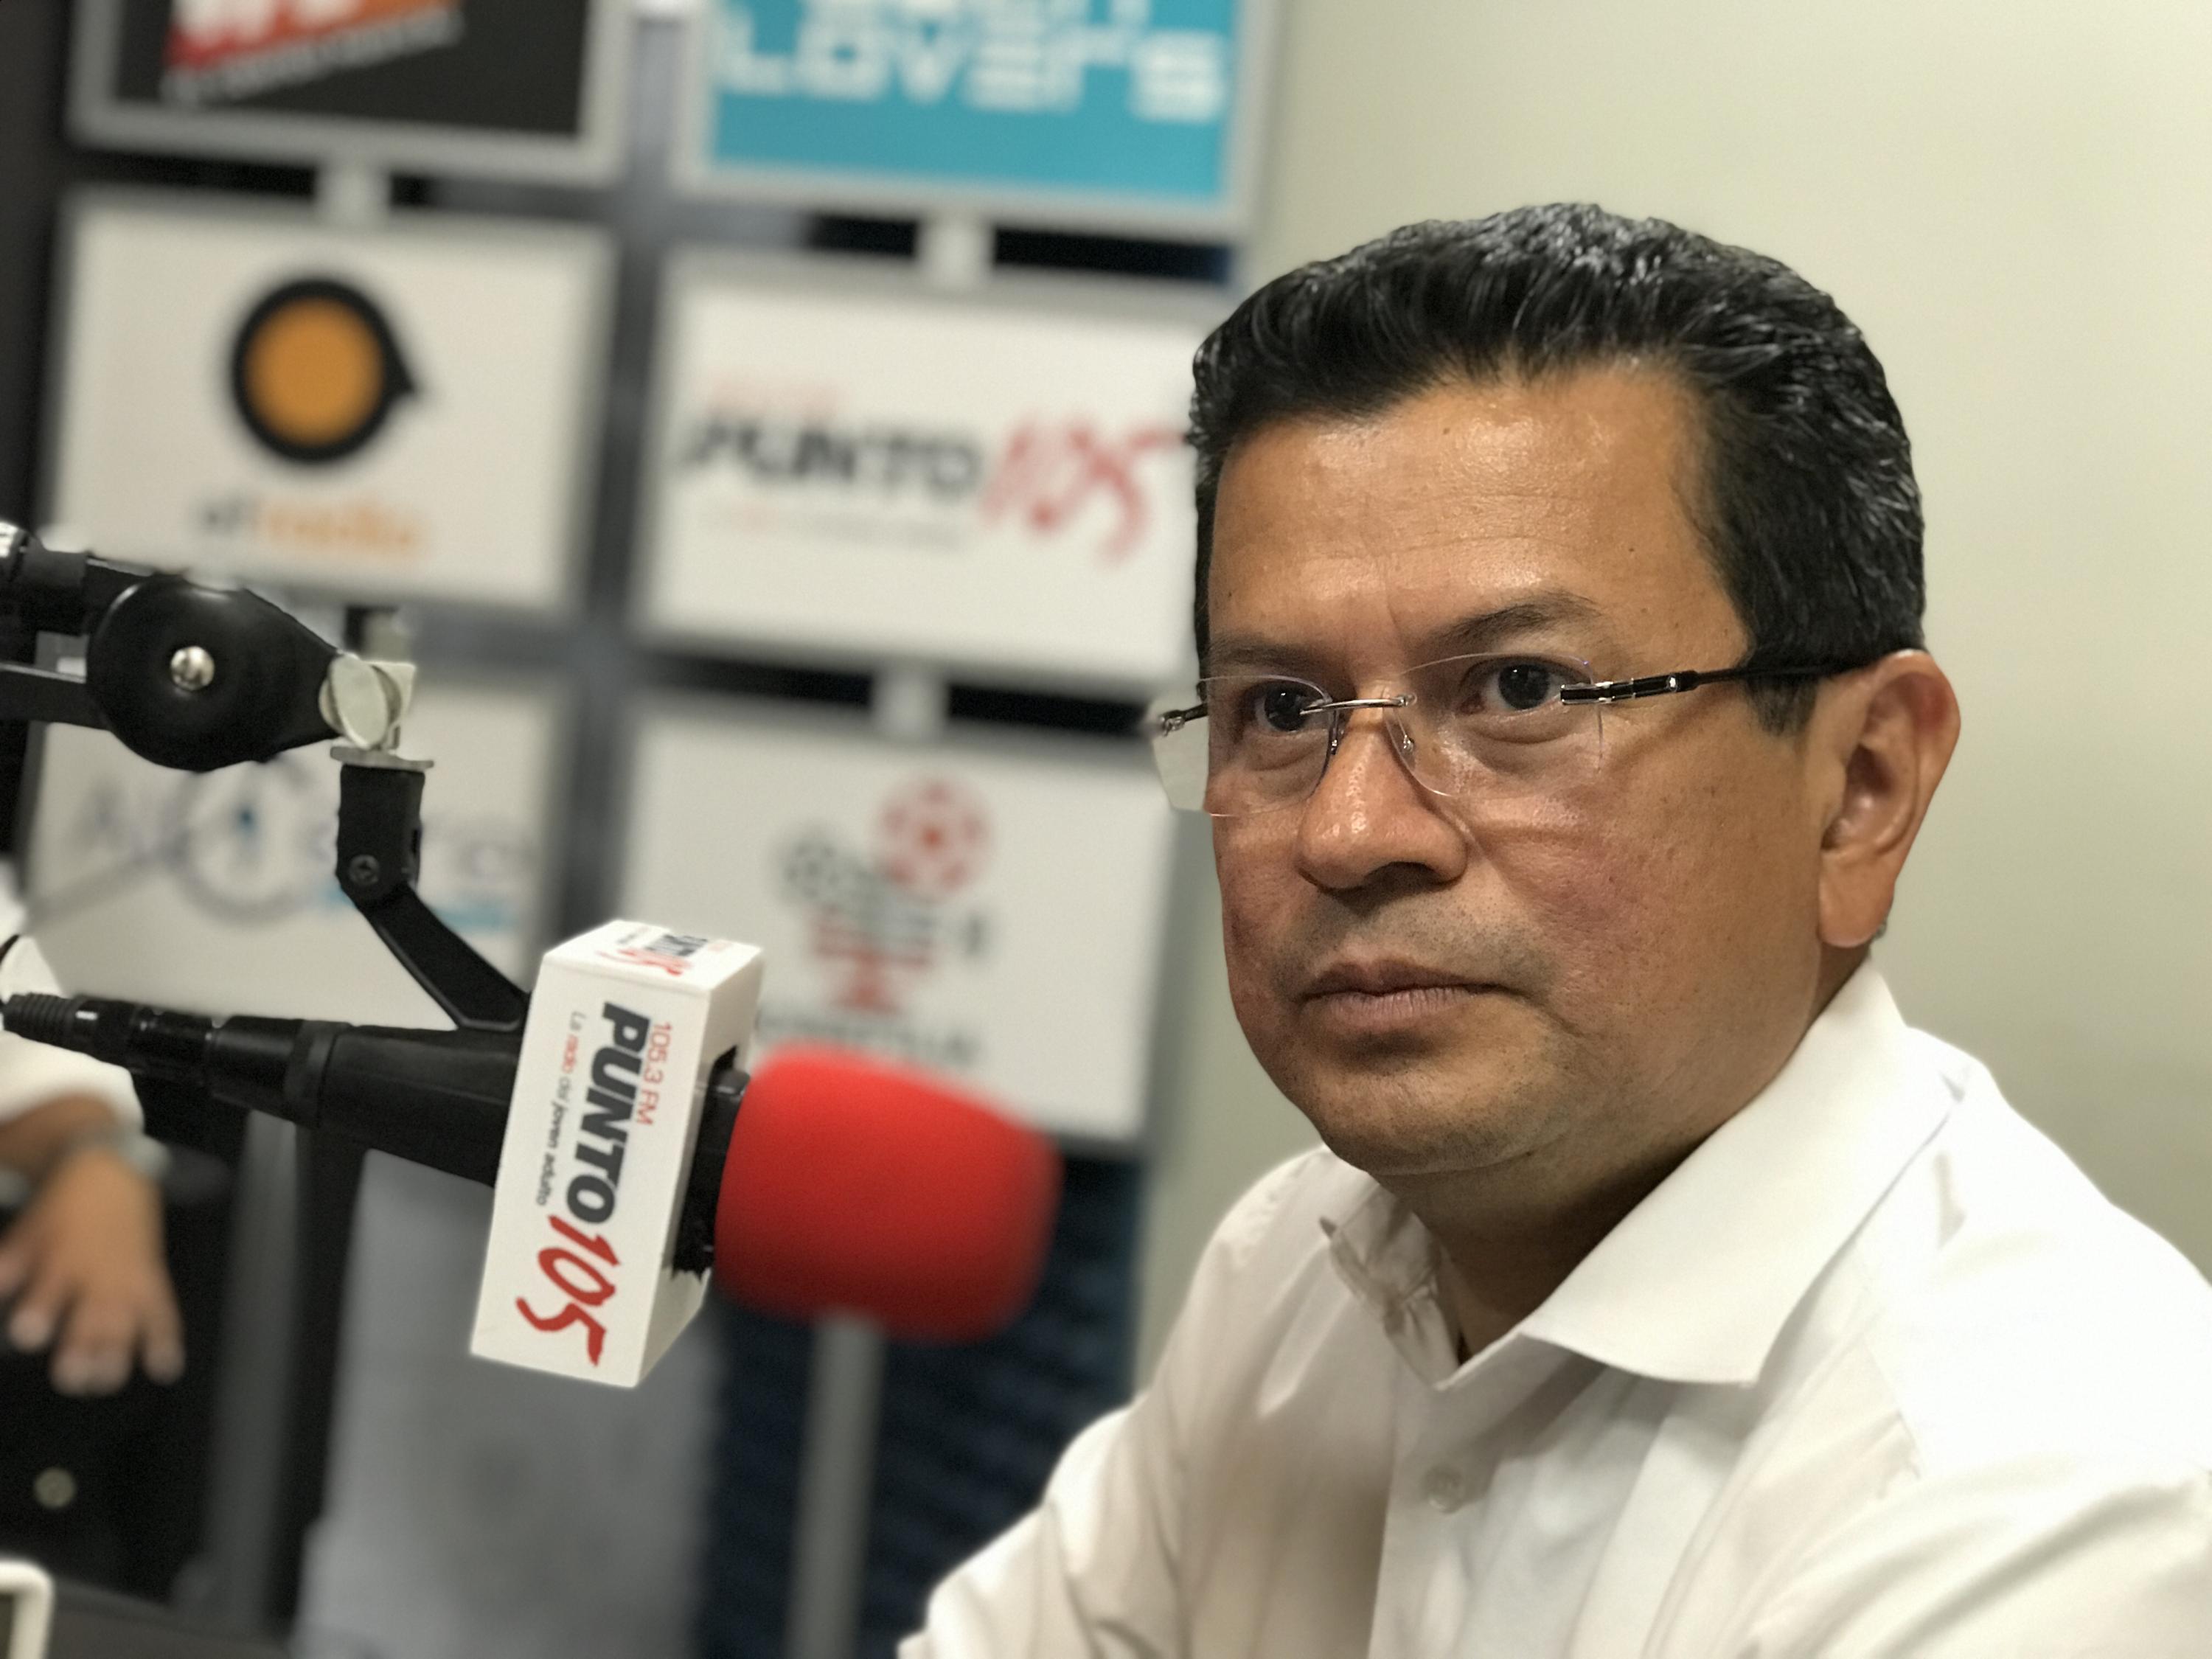 Hugo Martínez, excanciller de la República y candidato presidencial del FMLN, durante la entrevista en El Faro Radio, el 29 de noviembre de 2018. Foto: Omnionn/ El Faro